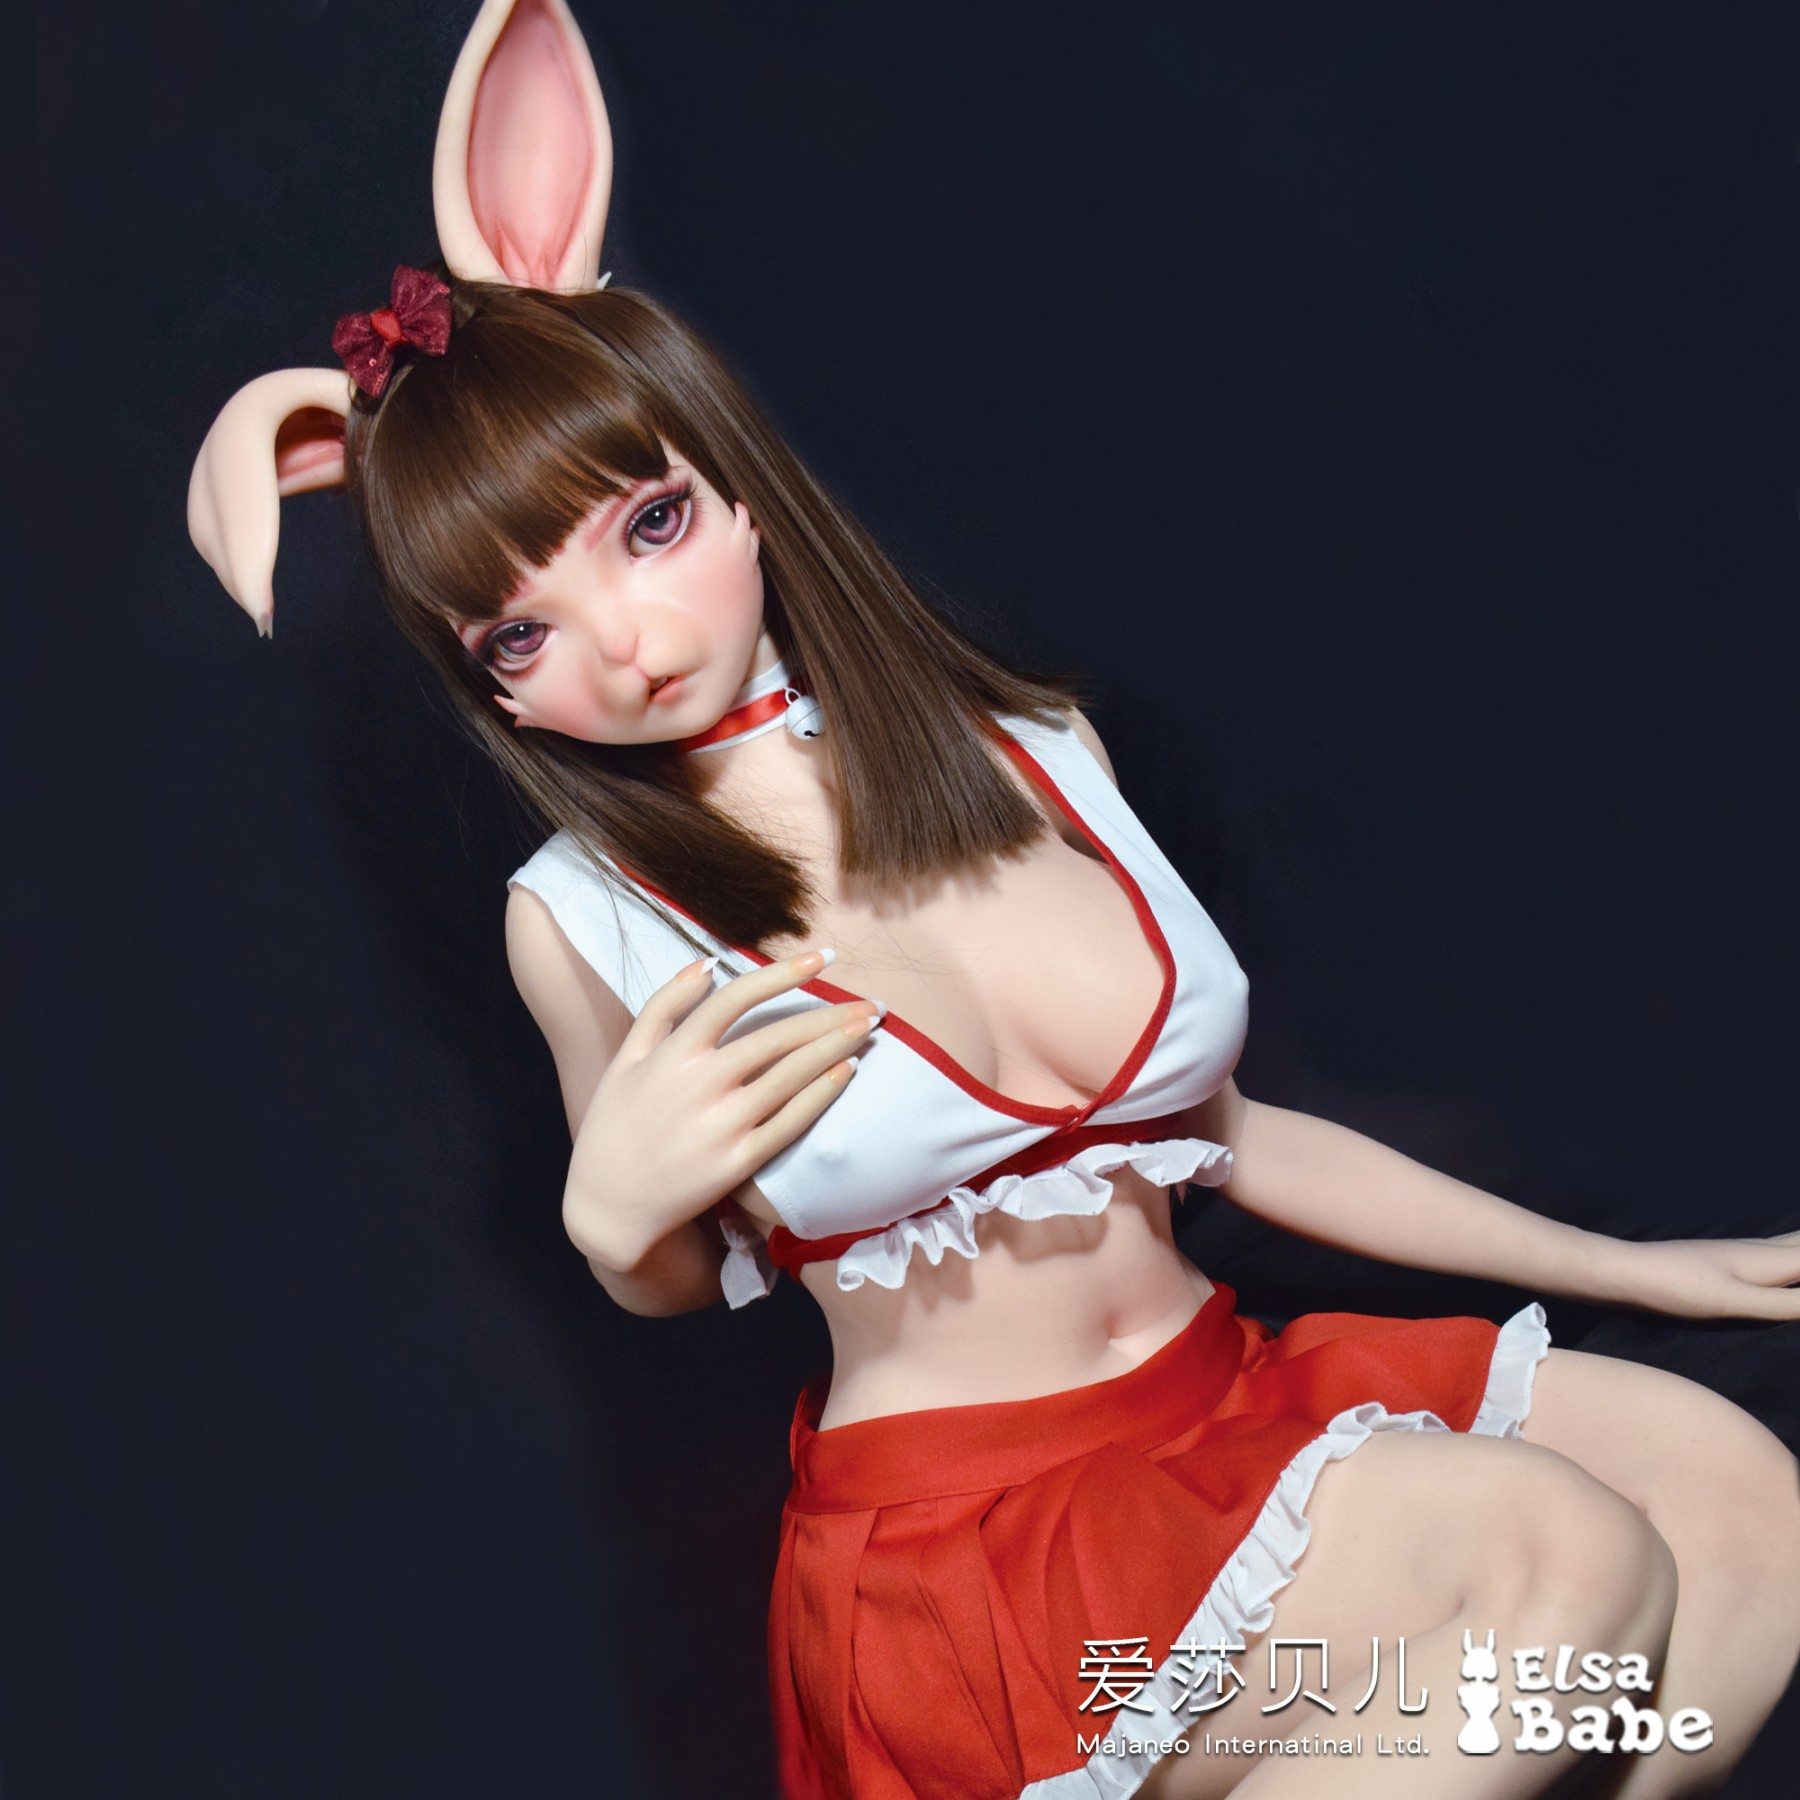 Ychan - r - furry sex dolls - 145738